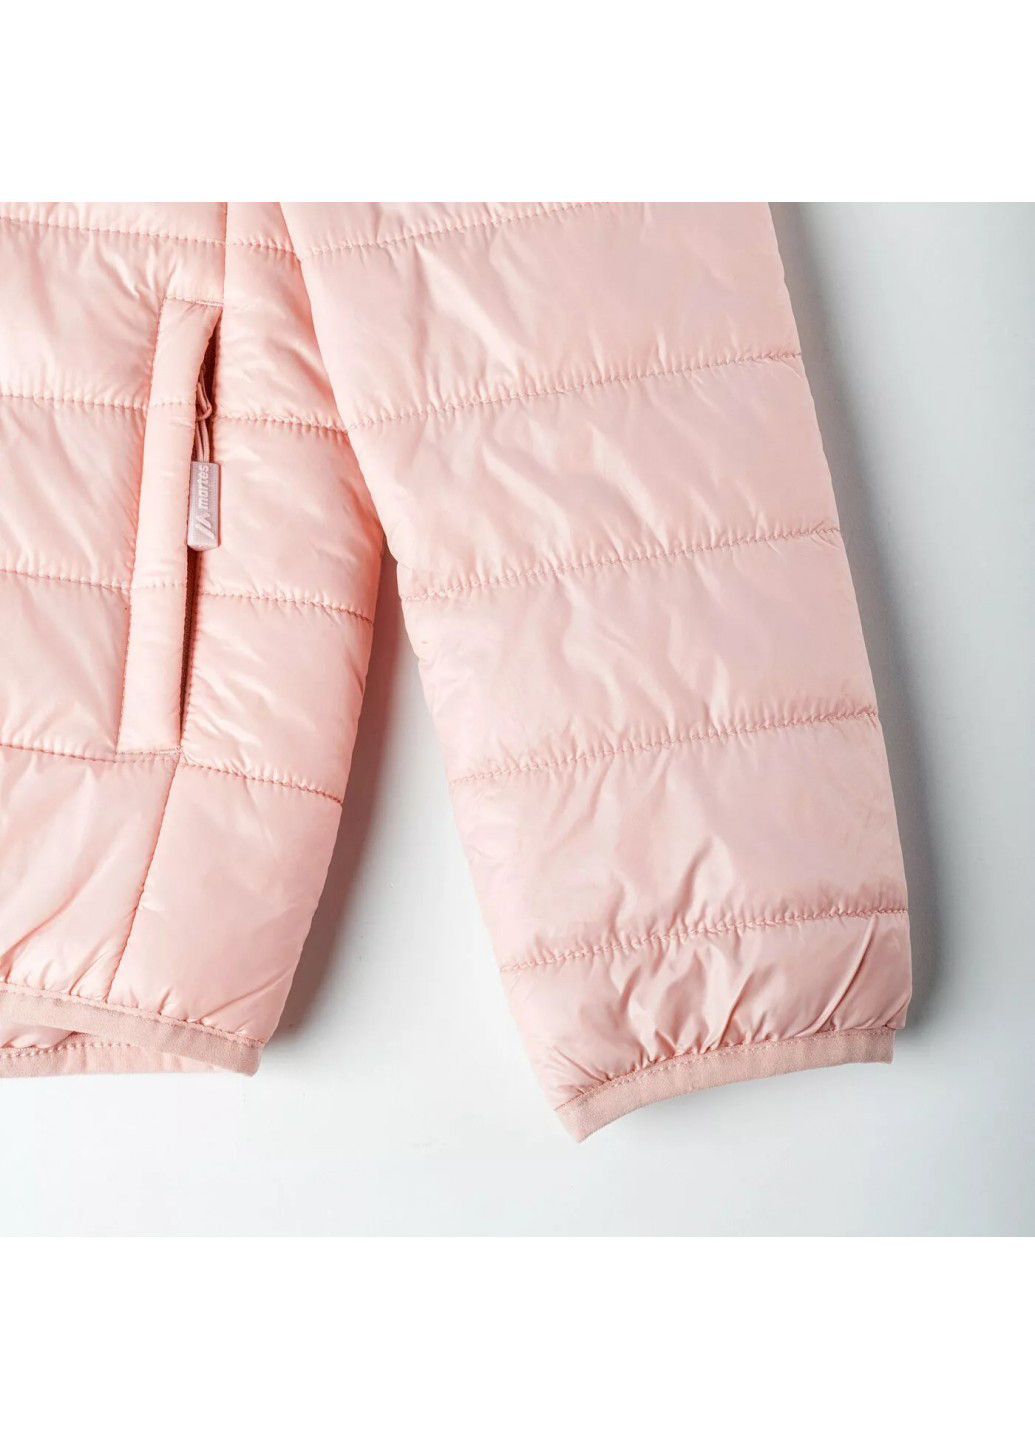 Розовая демисезонная куртка Martes MARON JR-PINK